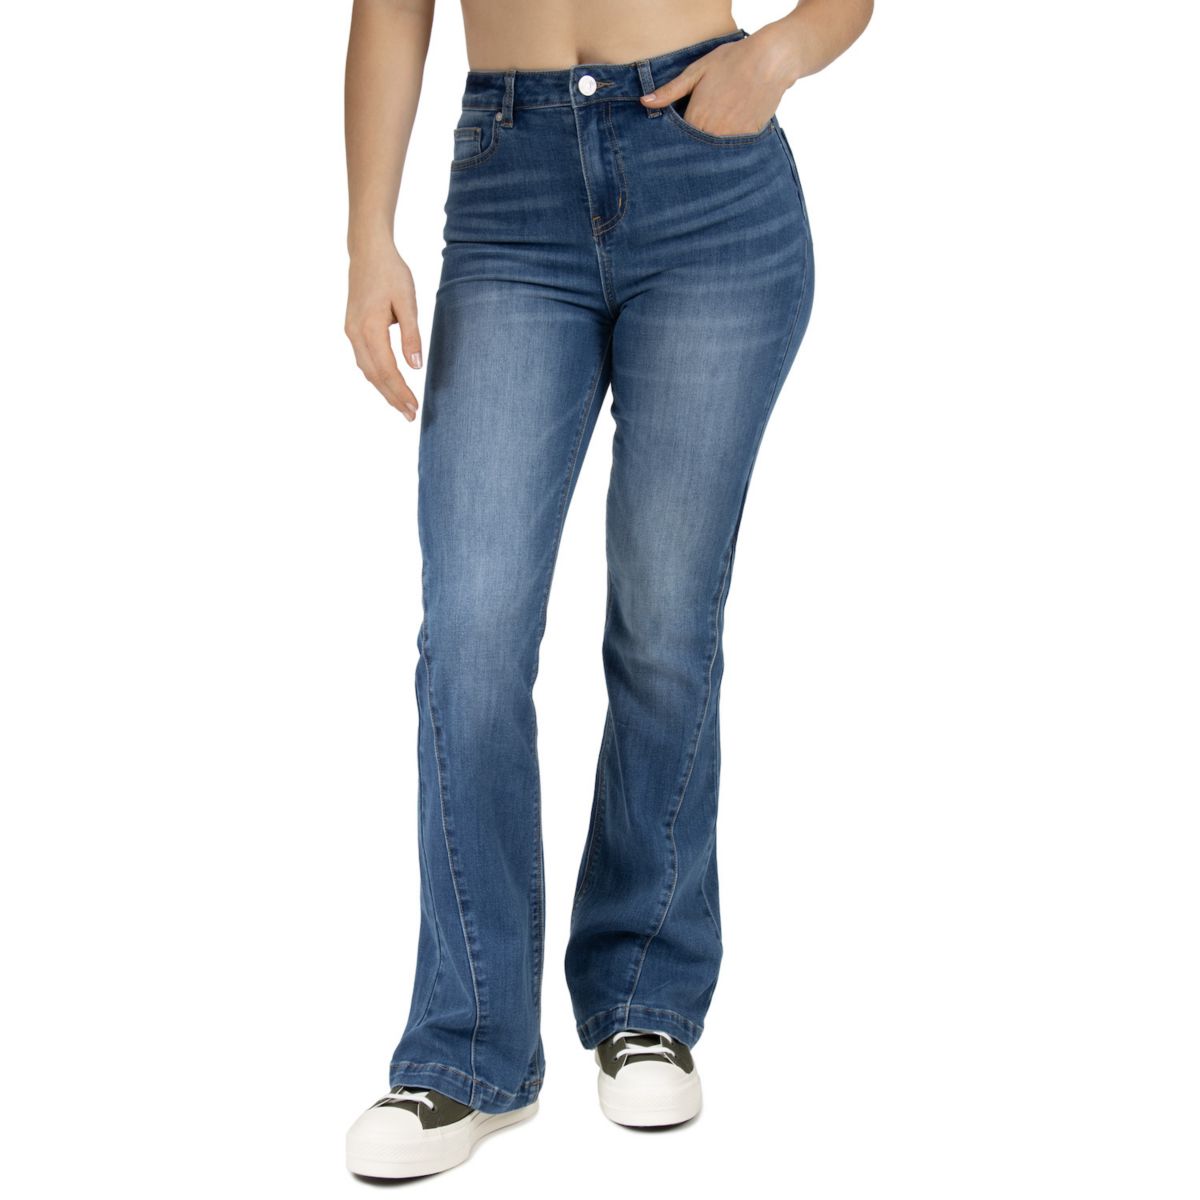 Расклешенные джинсы с высокой посадкой Indigo Rein для юниоров Indigo Rein